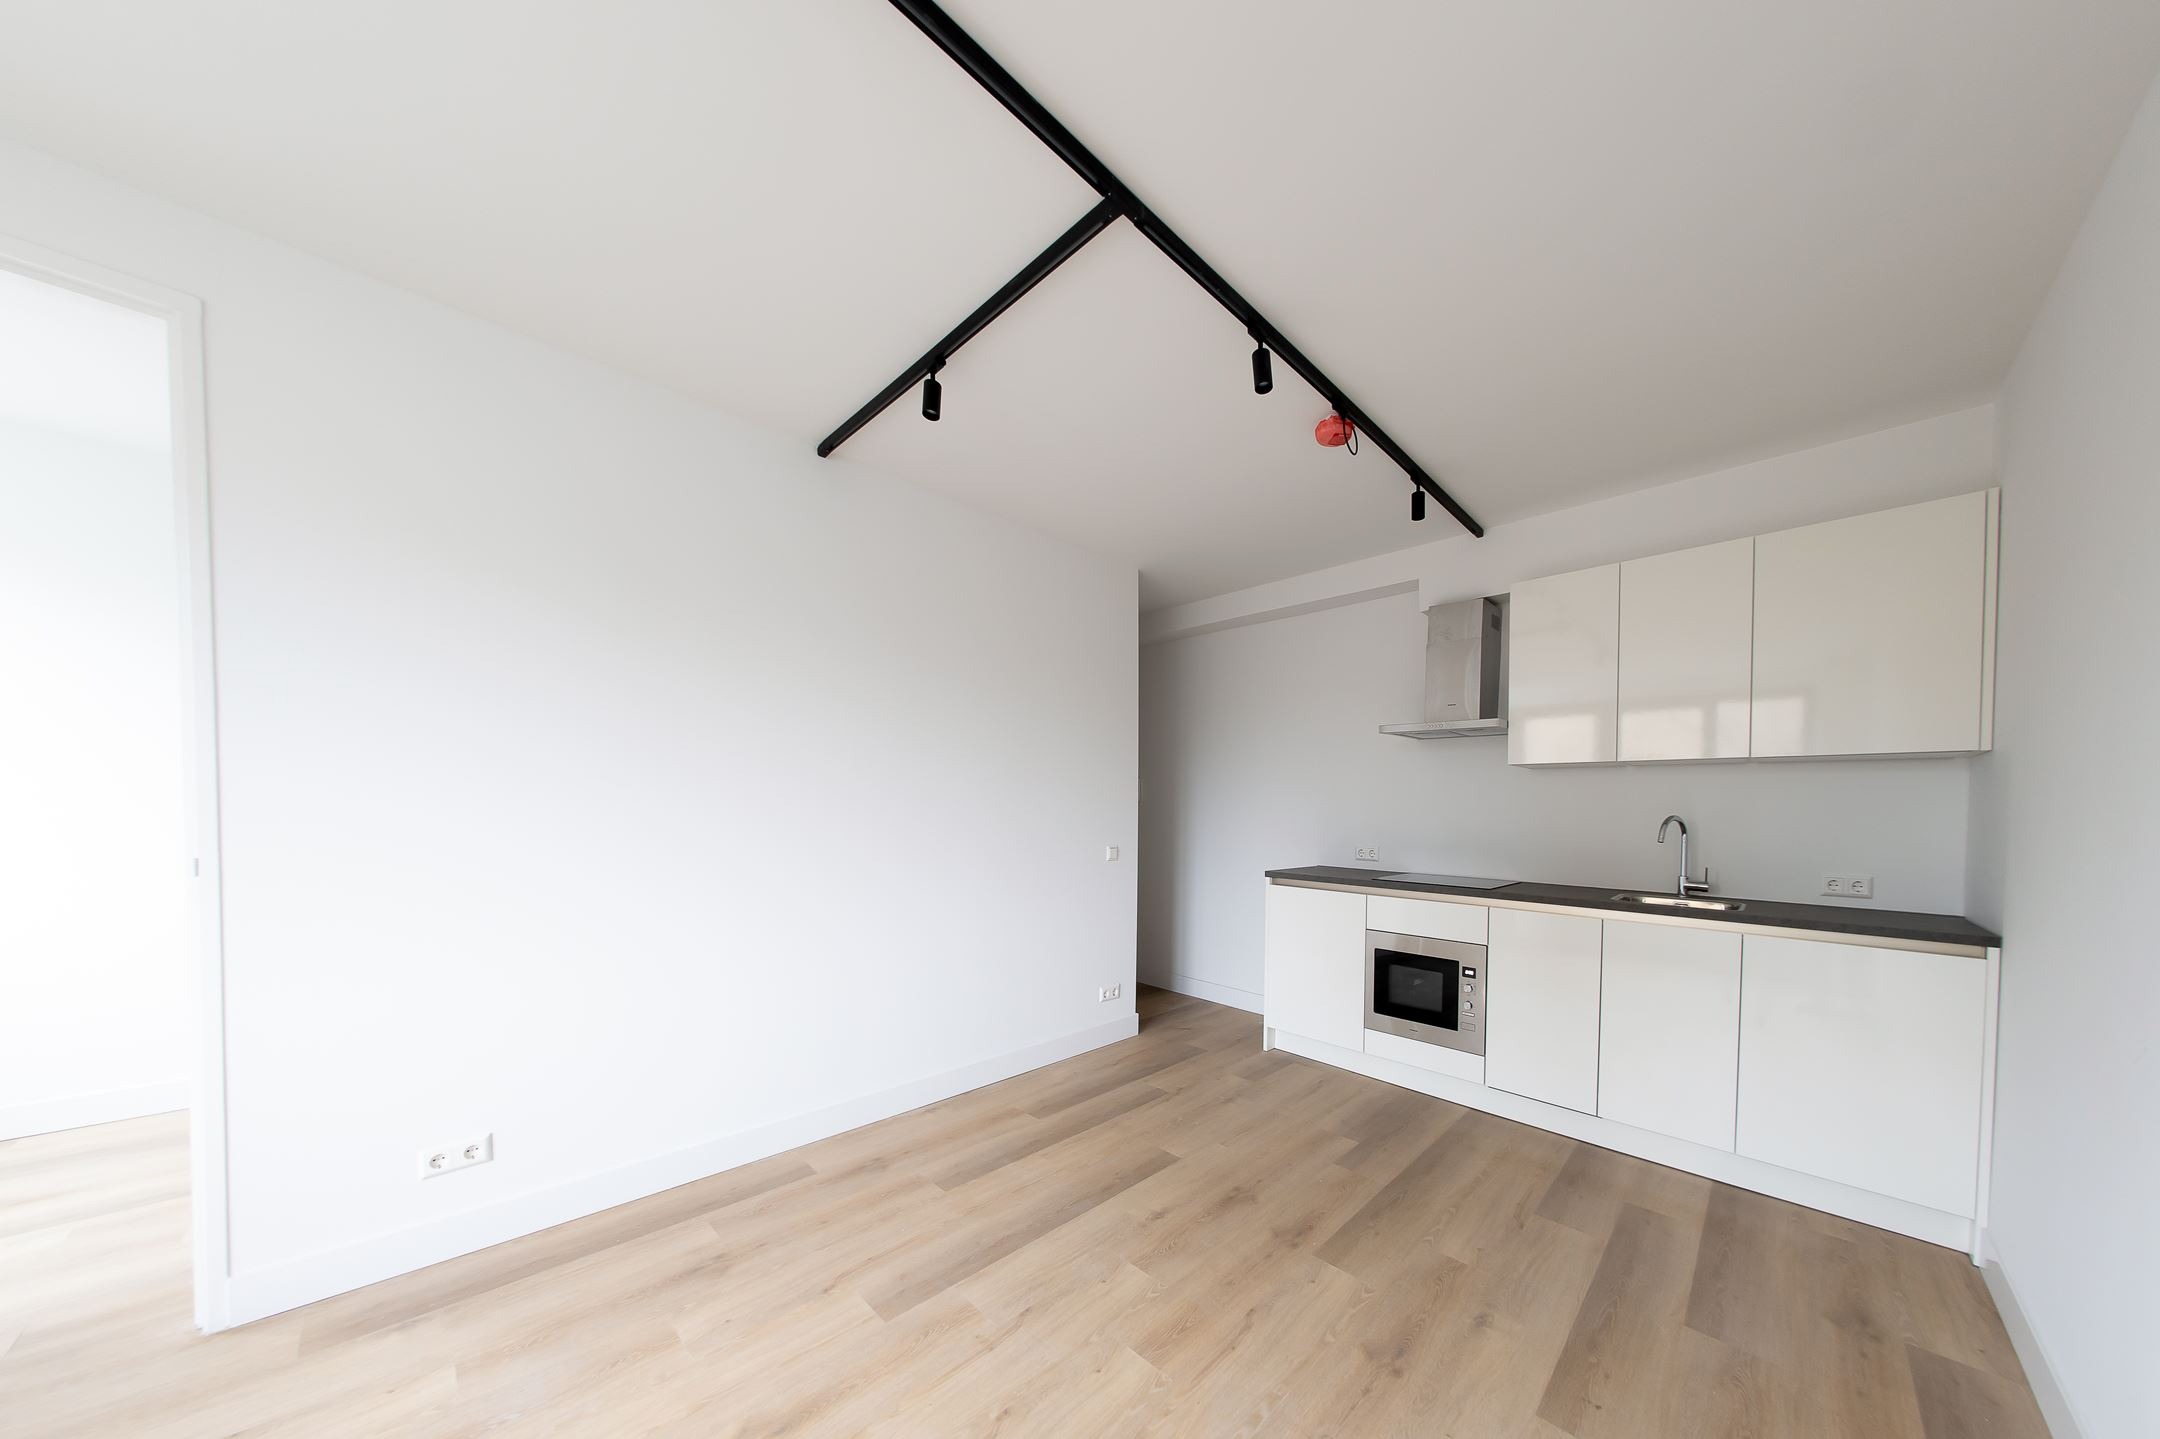 Woning / appartement - Utrecht - Othellodreef 139 -143